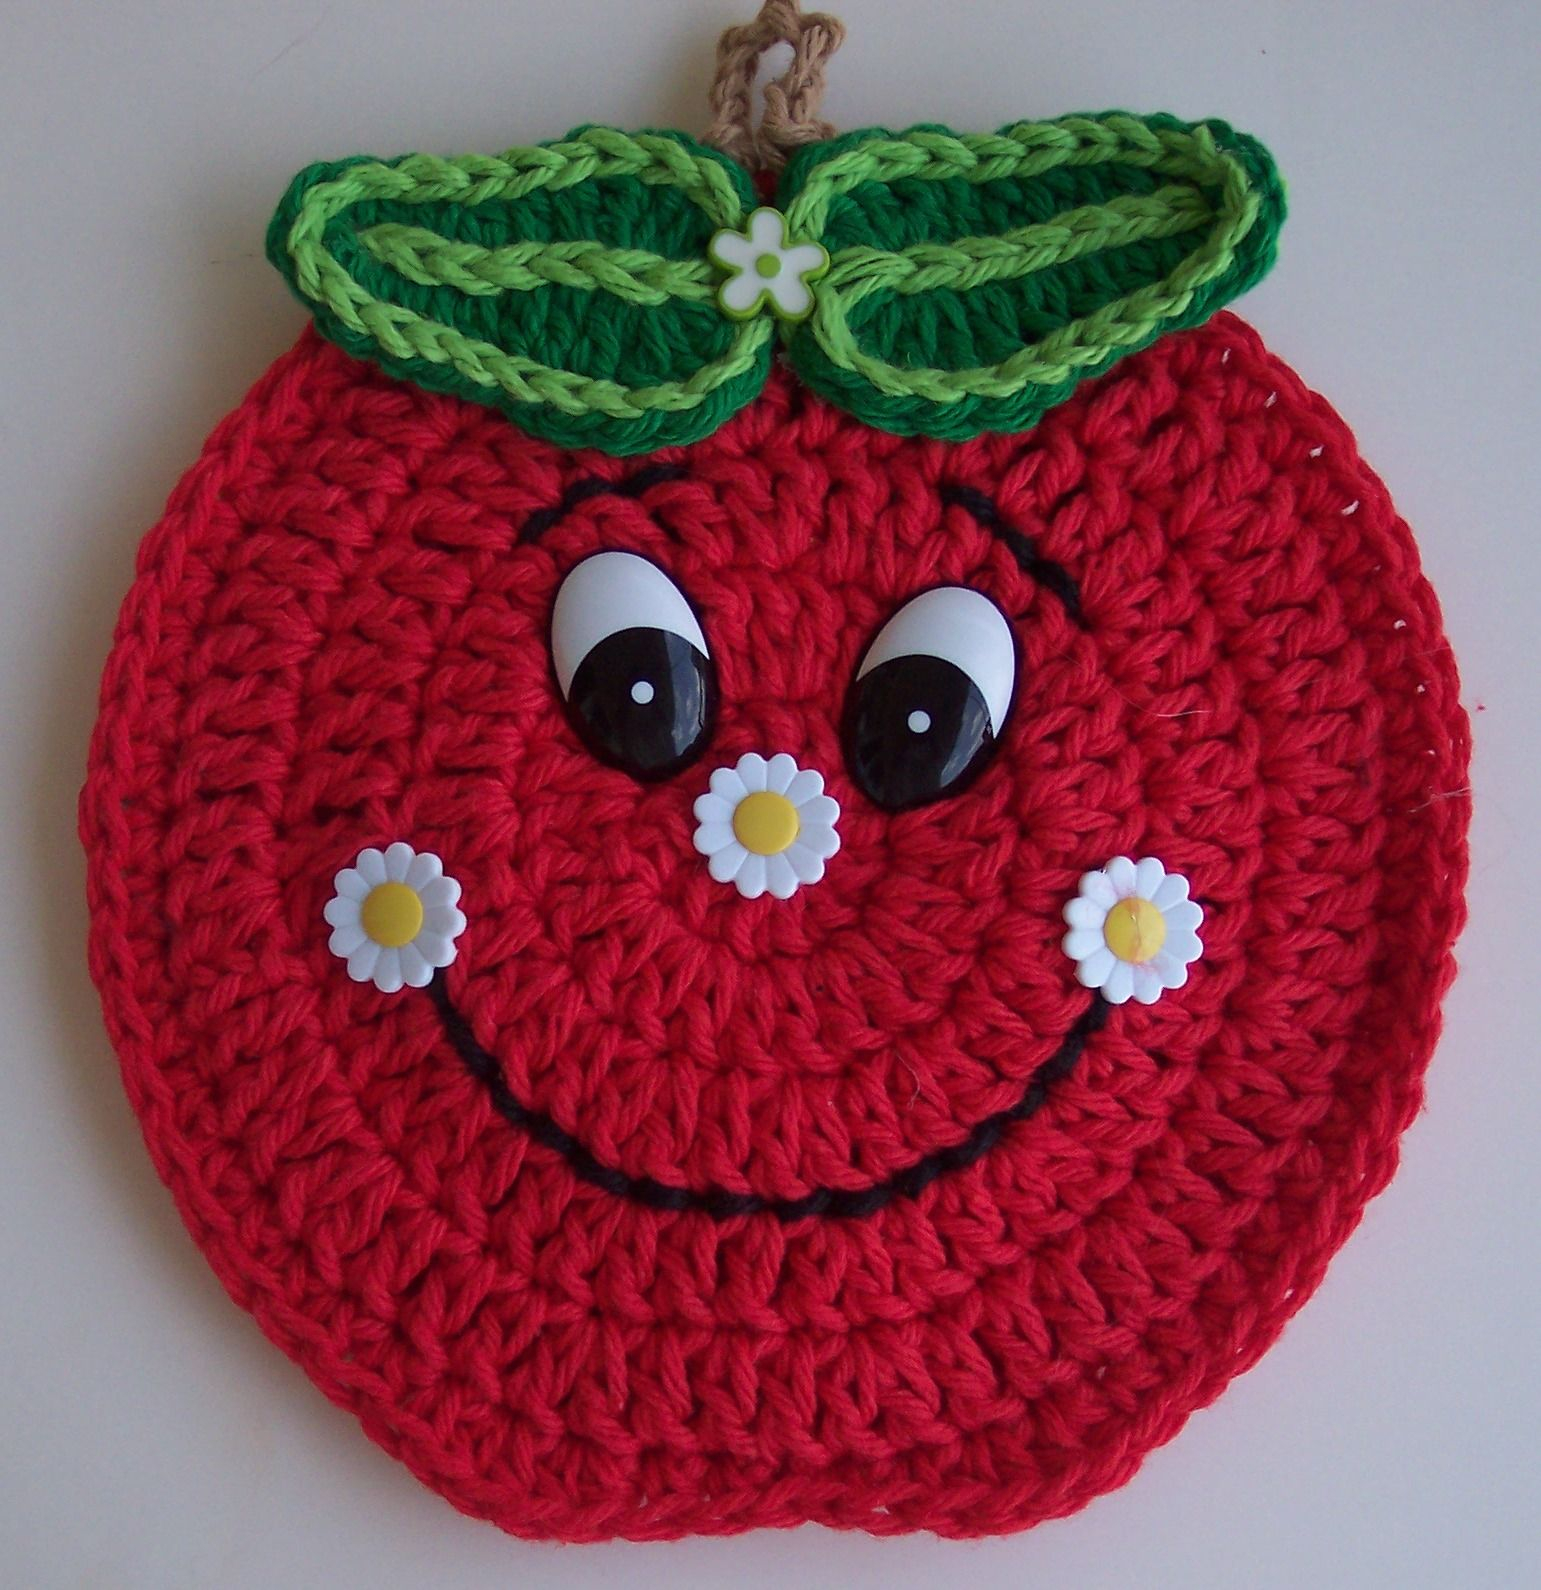 Crochet Apple Potholder Pattern Crochet Apple Potholder Craft Pinterest Crochet Crochet